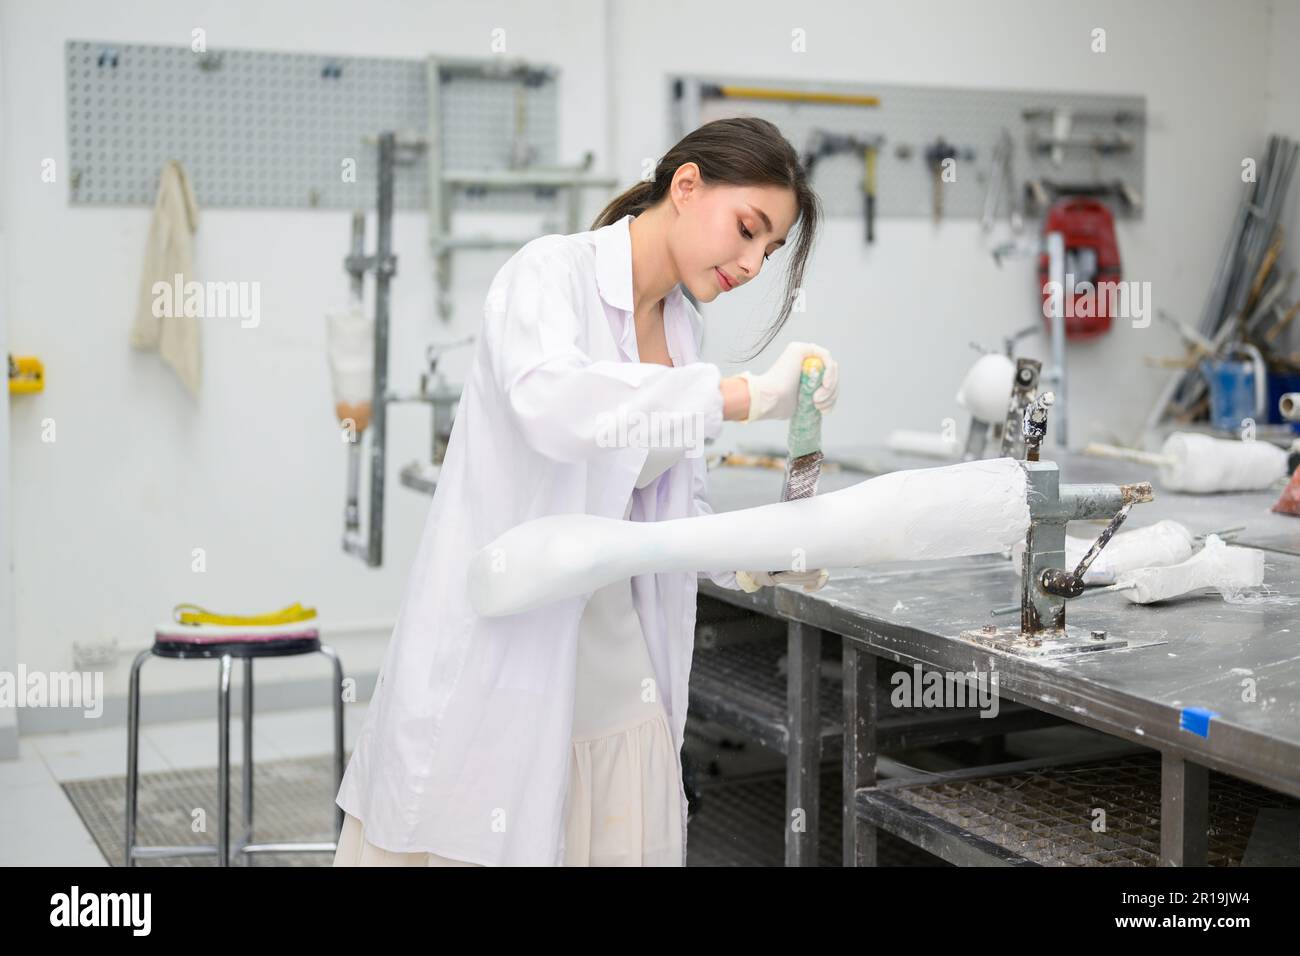 Un technicien en prothèse sculptant du plâtre moulé pour la prise en usine Banque D'Images